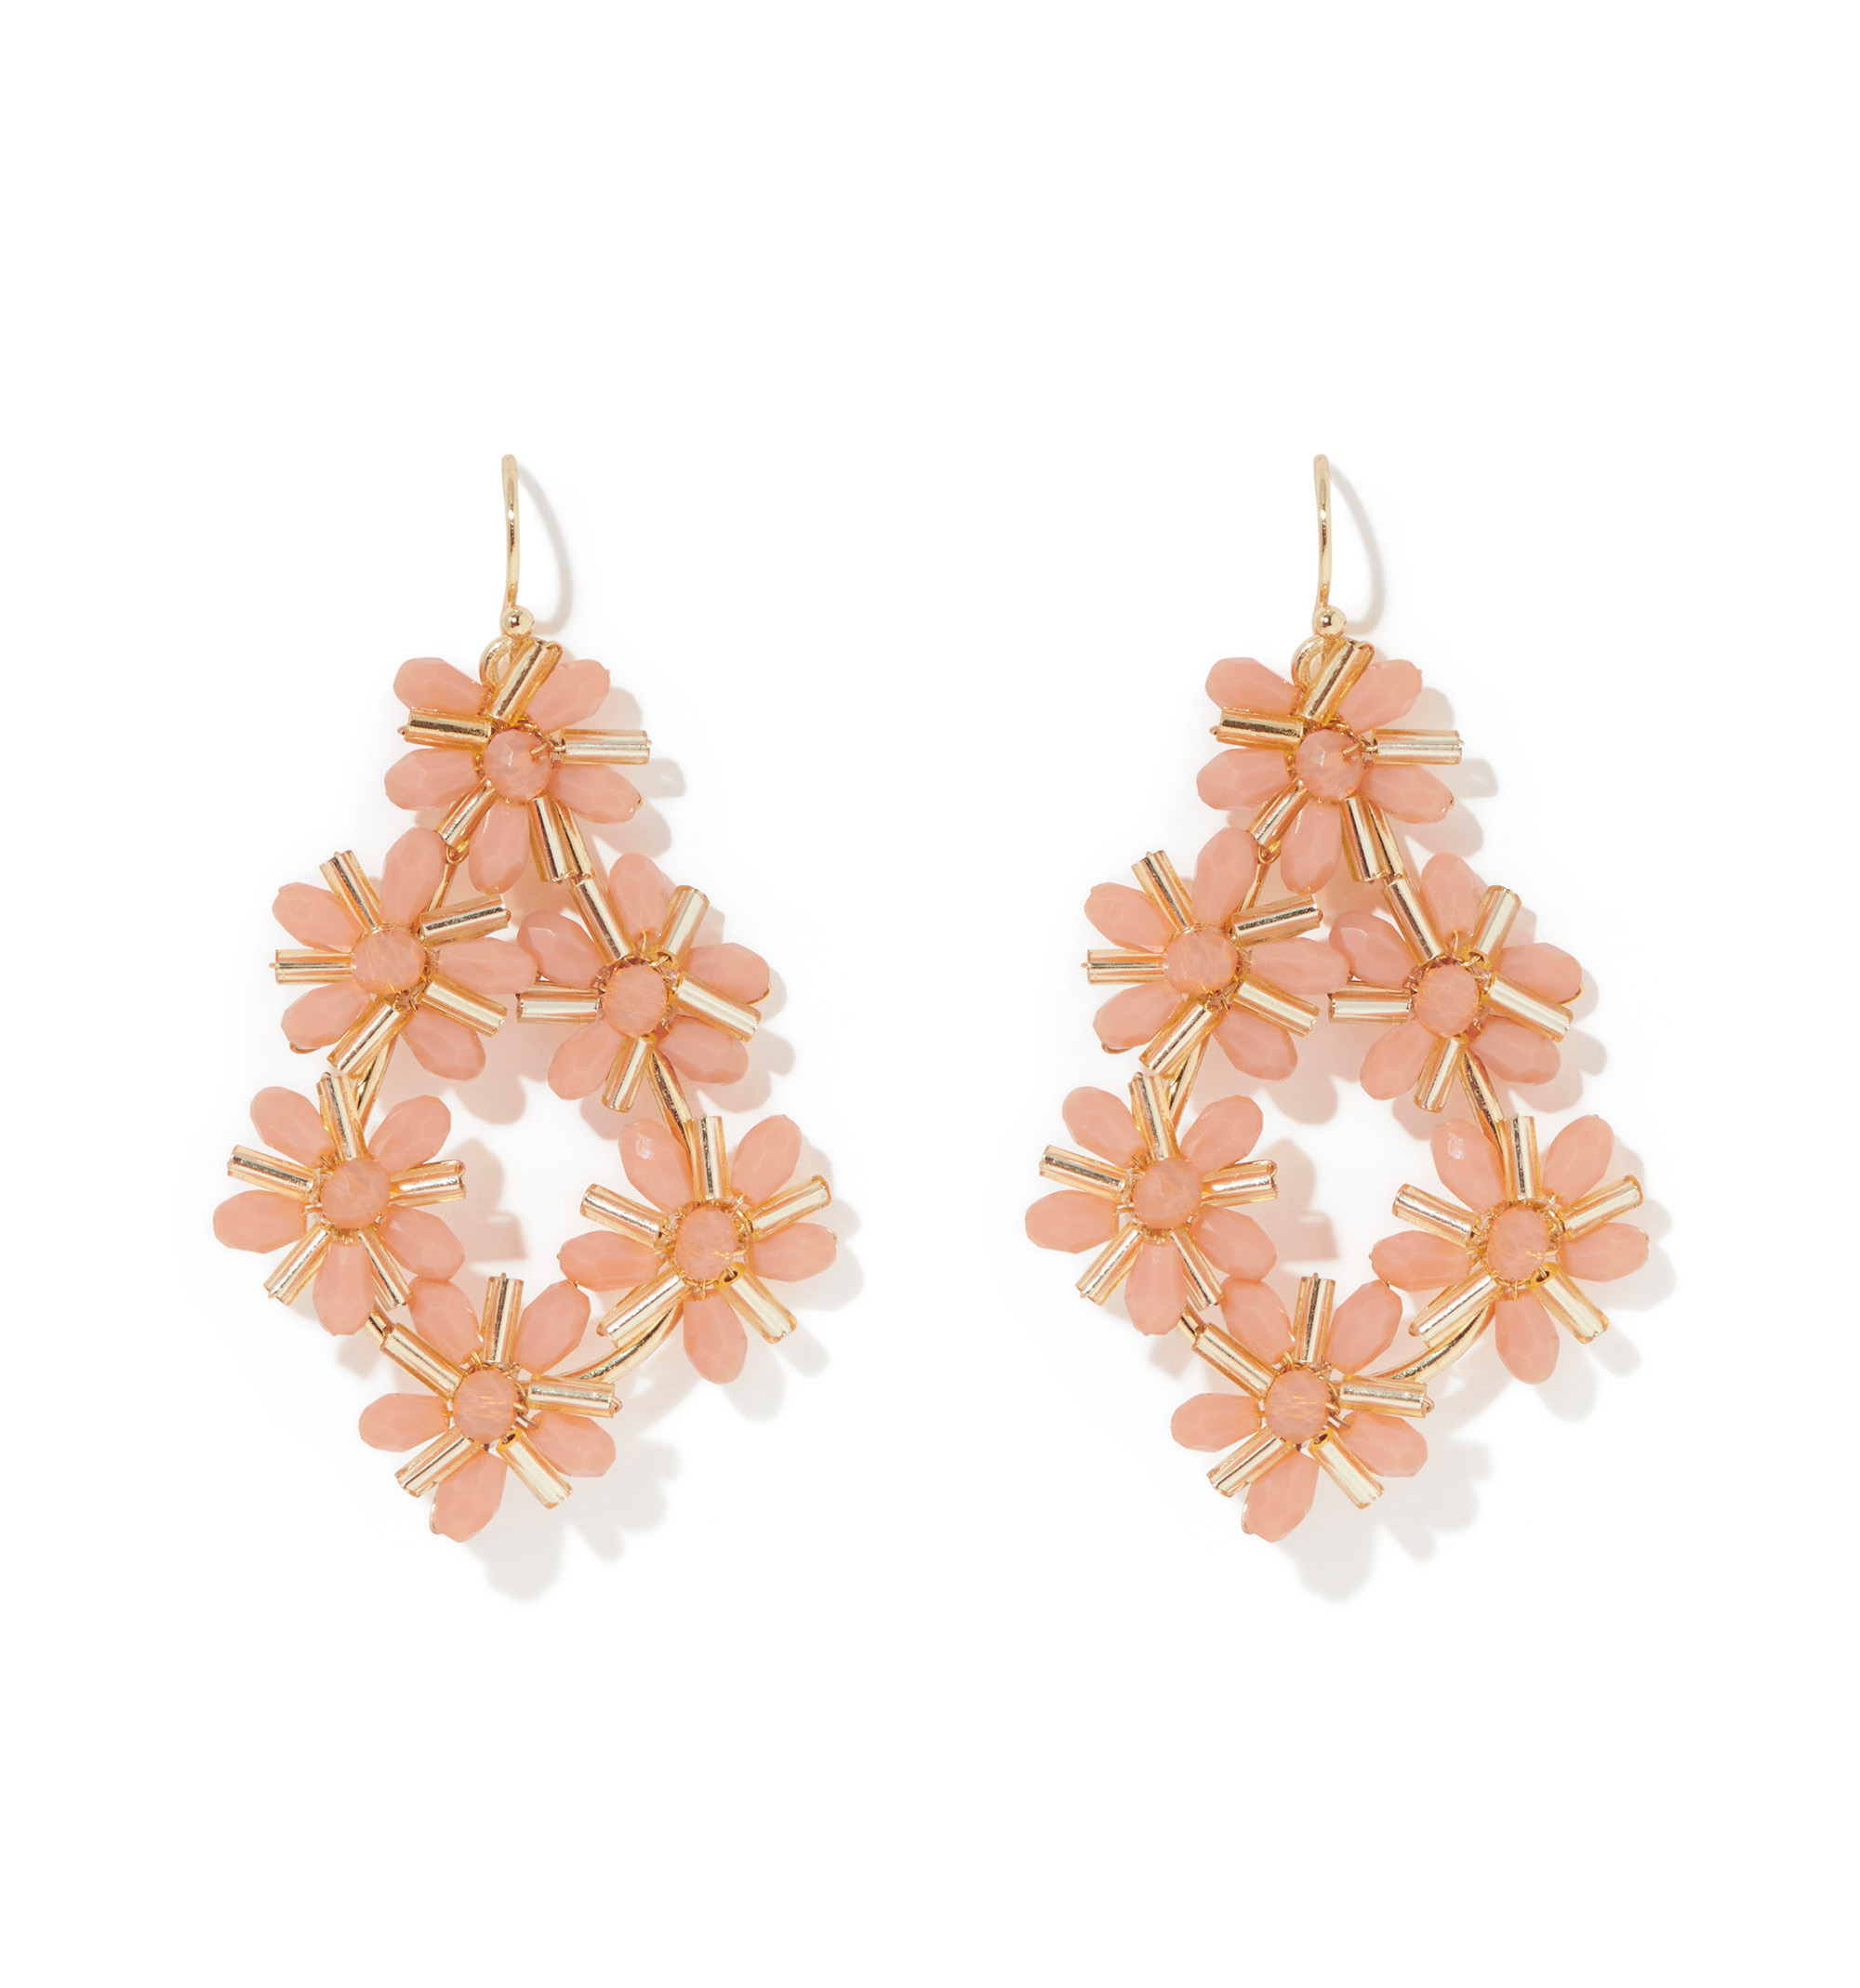 VS Diamond Flower Earrings 67068: buy online in NYC. Best price at TRAXNYC.